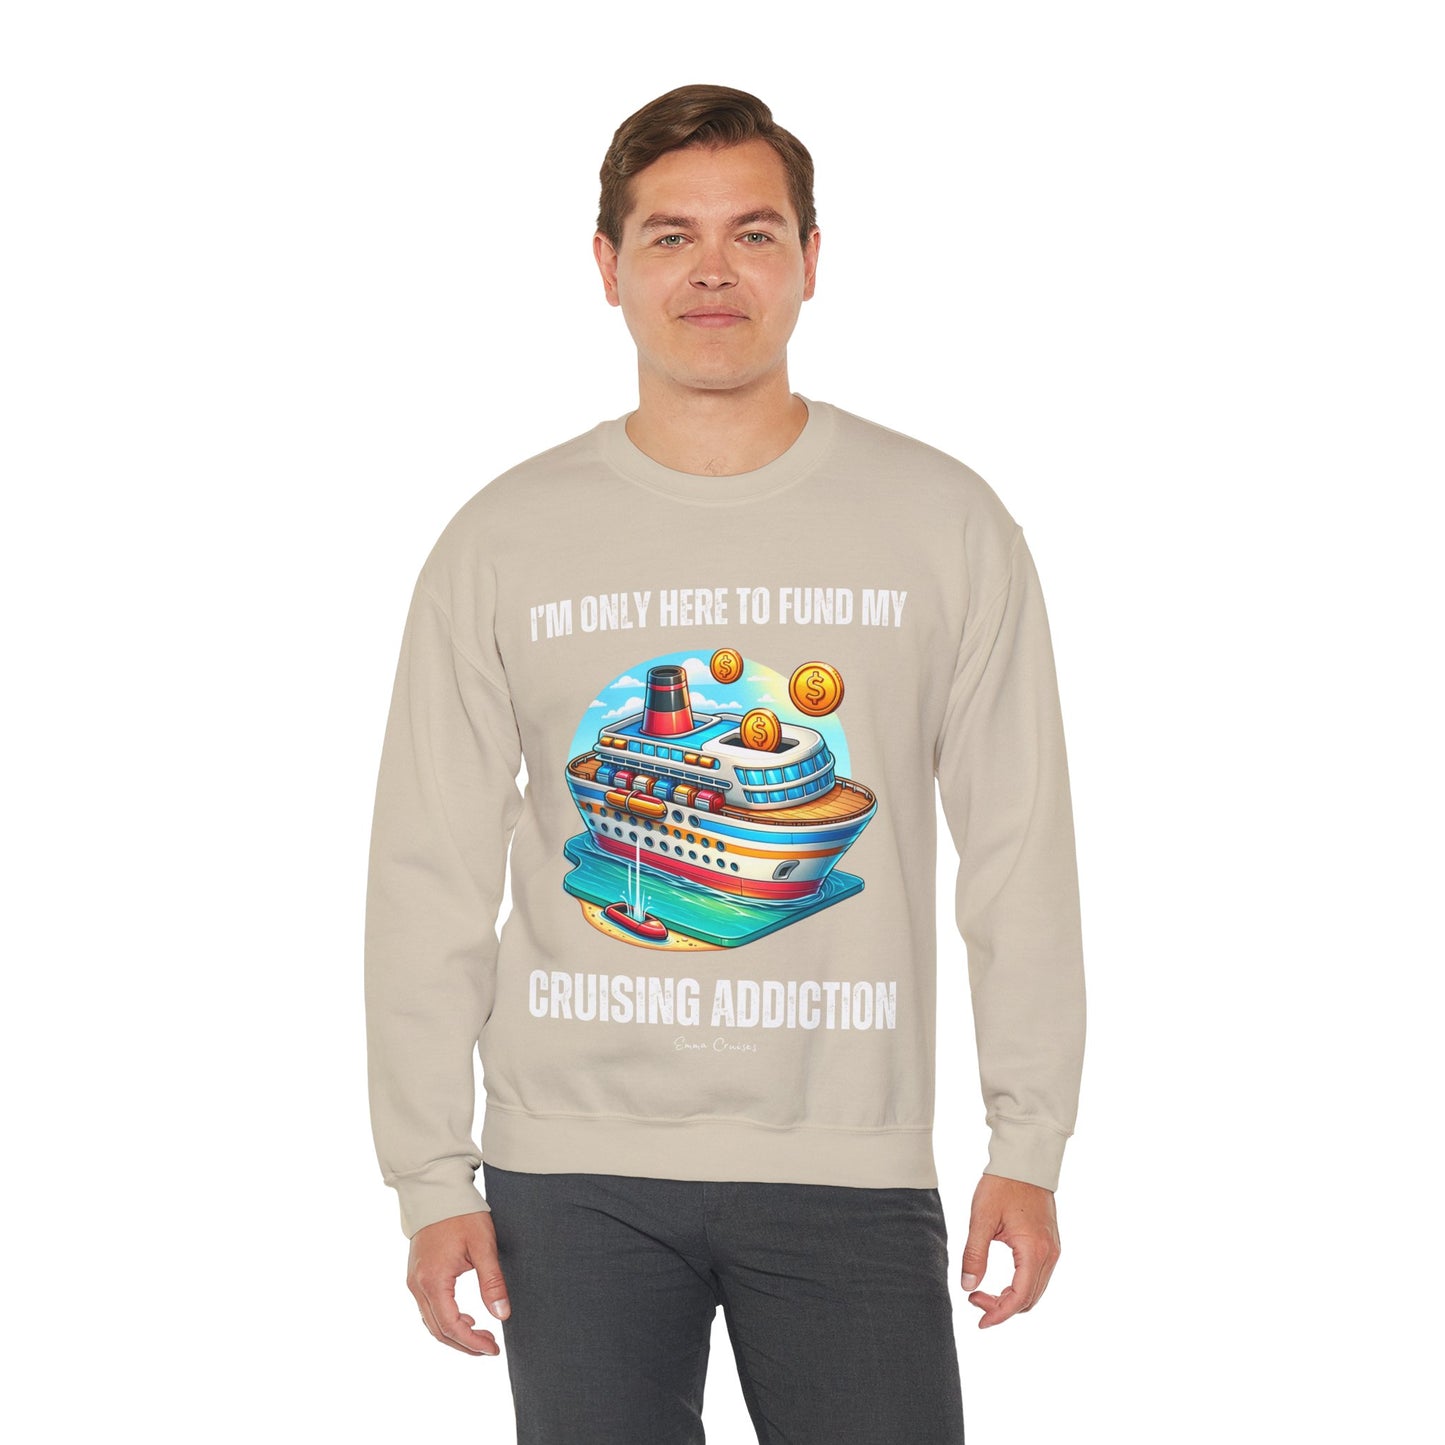 I'm Only Here to Fund My Cruising Addiction - UNISEX Crewneck Sweatshirt